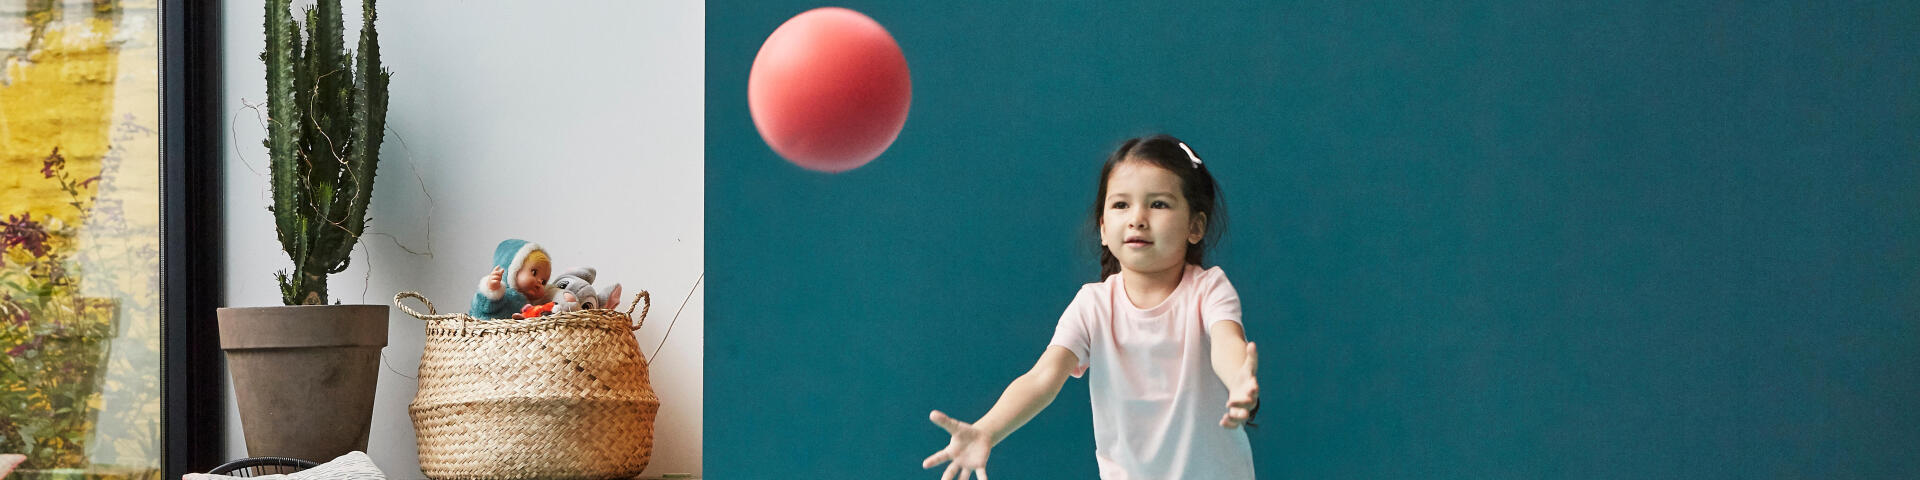 5 idées pour développer l'équilibre avec un ballon